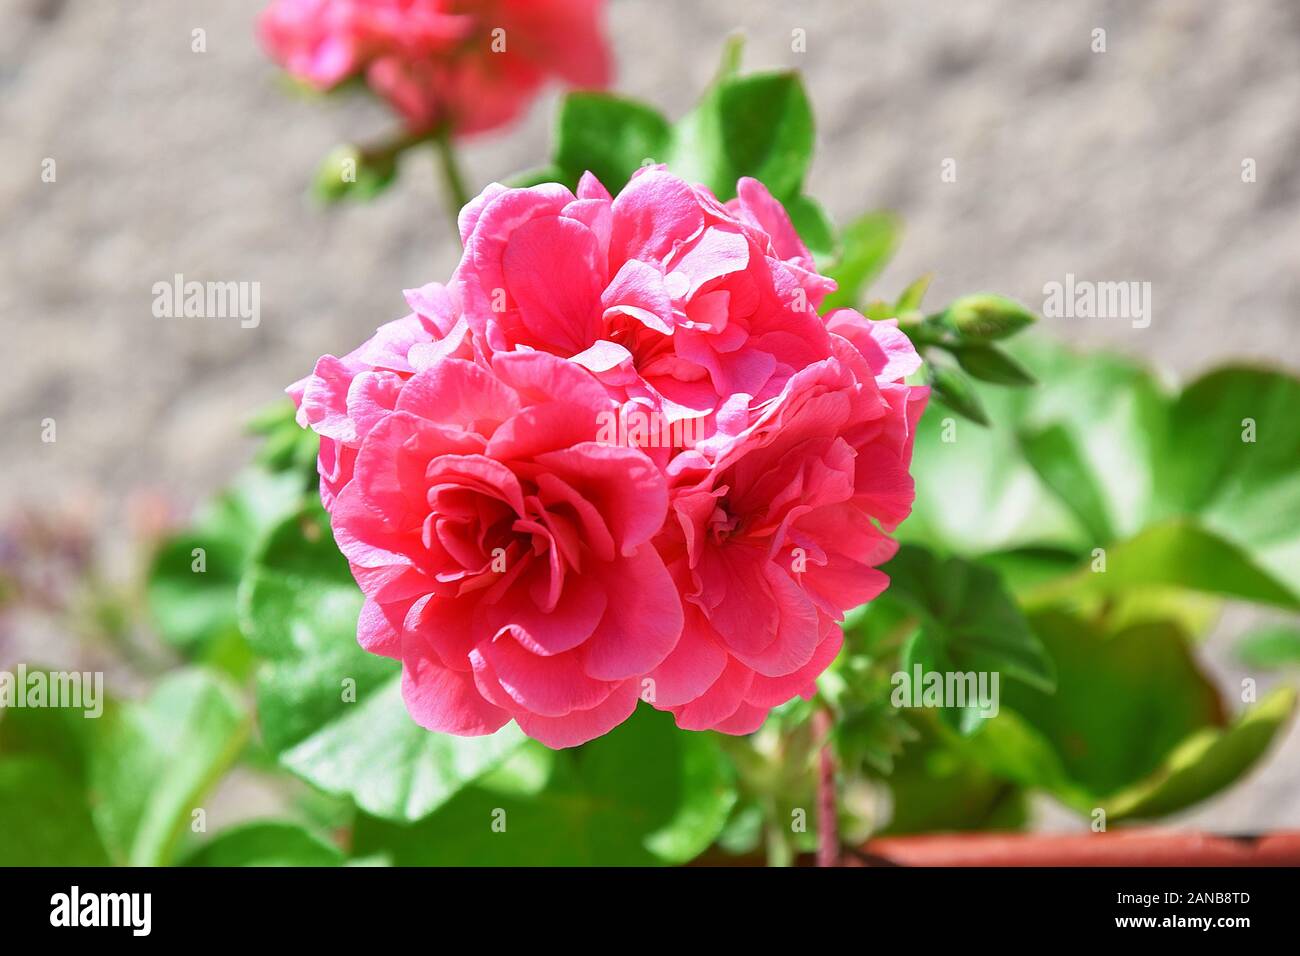 Pelargonium pianta fiori colorati di rosa ritratto Foto Stock